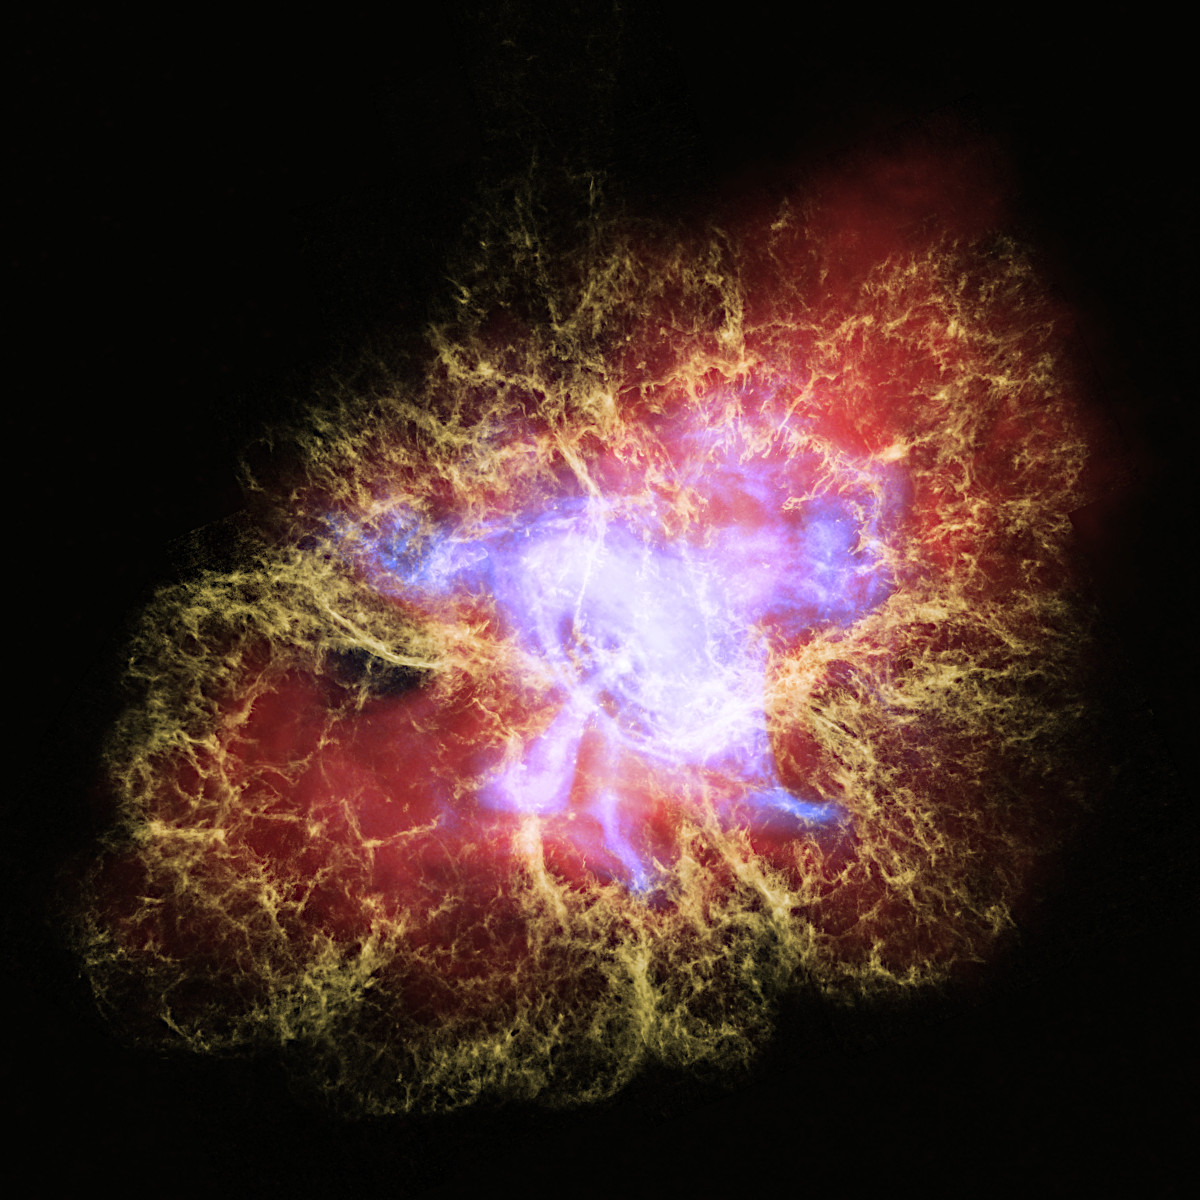 ハッブル スピッツァー チャンドラの画像をもとに 超新星残骸 かに星雲 の立体構造が可視化された アストロピクス